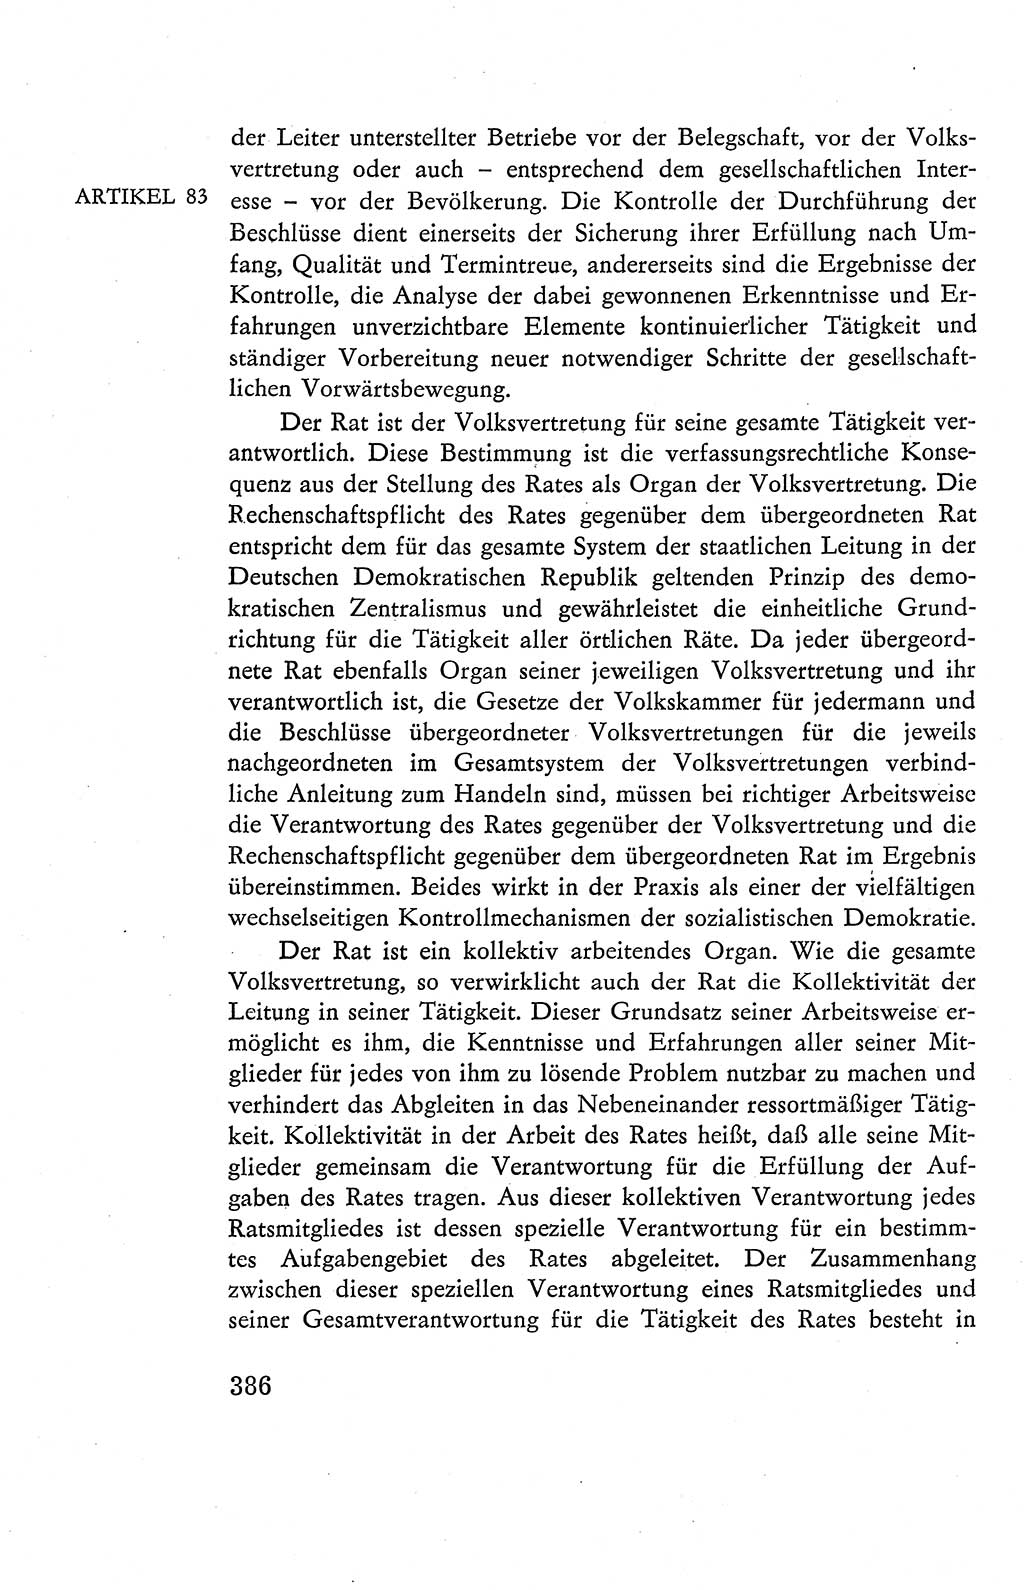 Verfassung der Deutschen Demokratischen Republik (DDR), Dokumente, Kommentar 1969, Band 2, Seite 386 (Verf. DDR Dok. Komm. 1969, Bd. 2, S. 386)